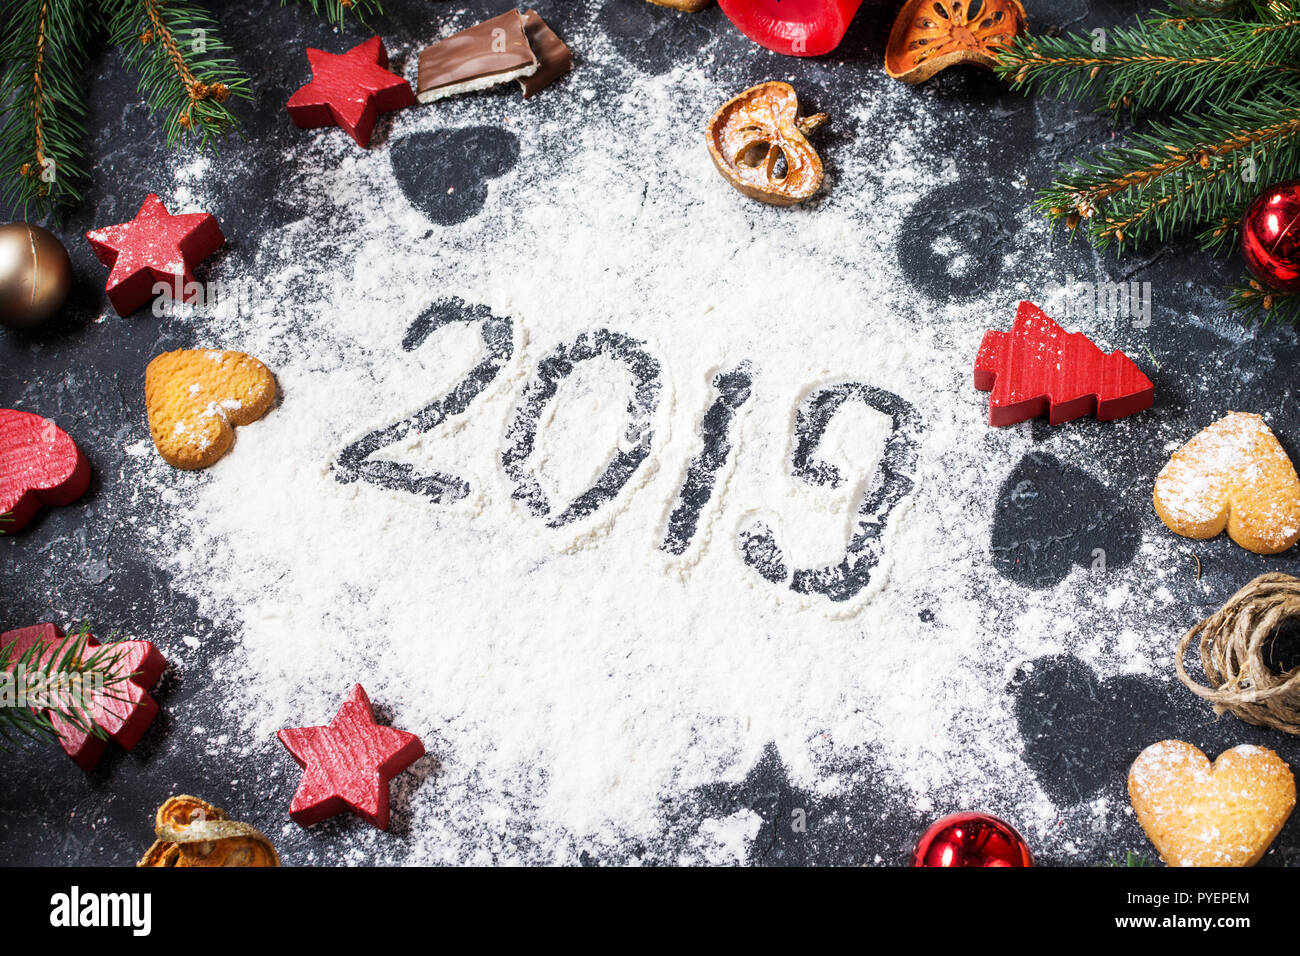 Feliz Año Nuevo 2019 Escrito en harina y decoraciones navideñas galletas de jengibre sobre fondo de piedra oscura. Tarjeta de felicitación de Año Nuevo Foto de stock